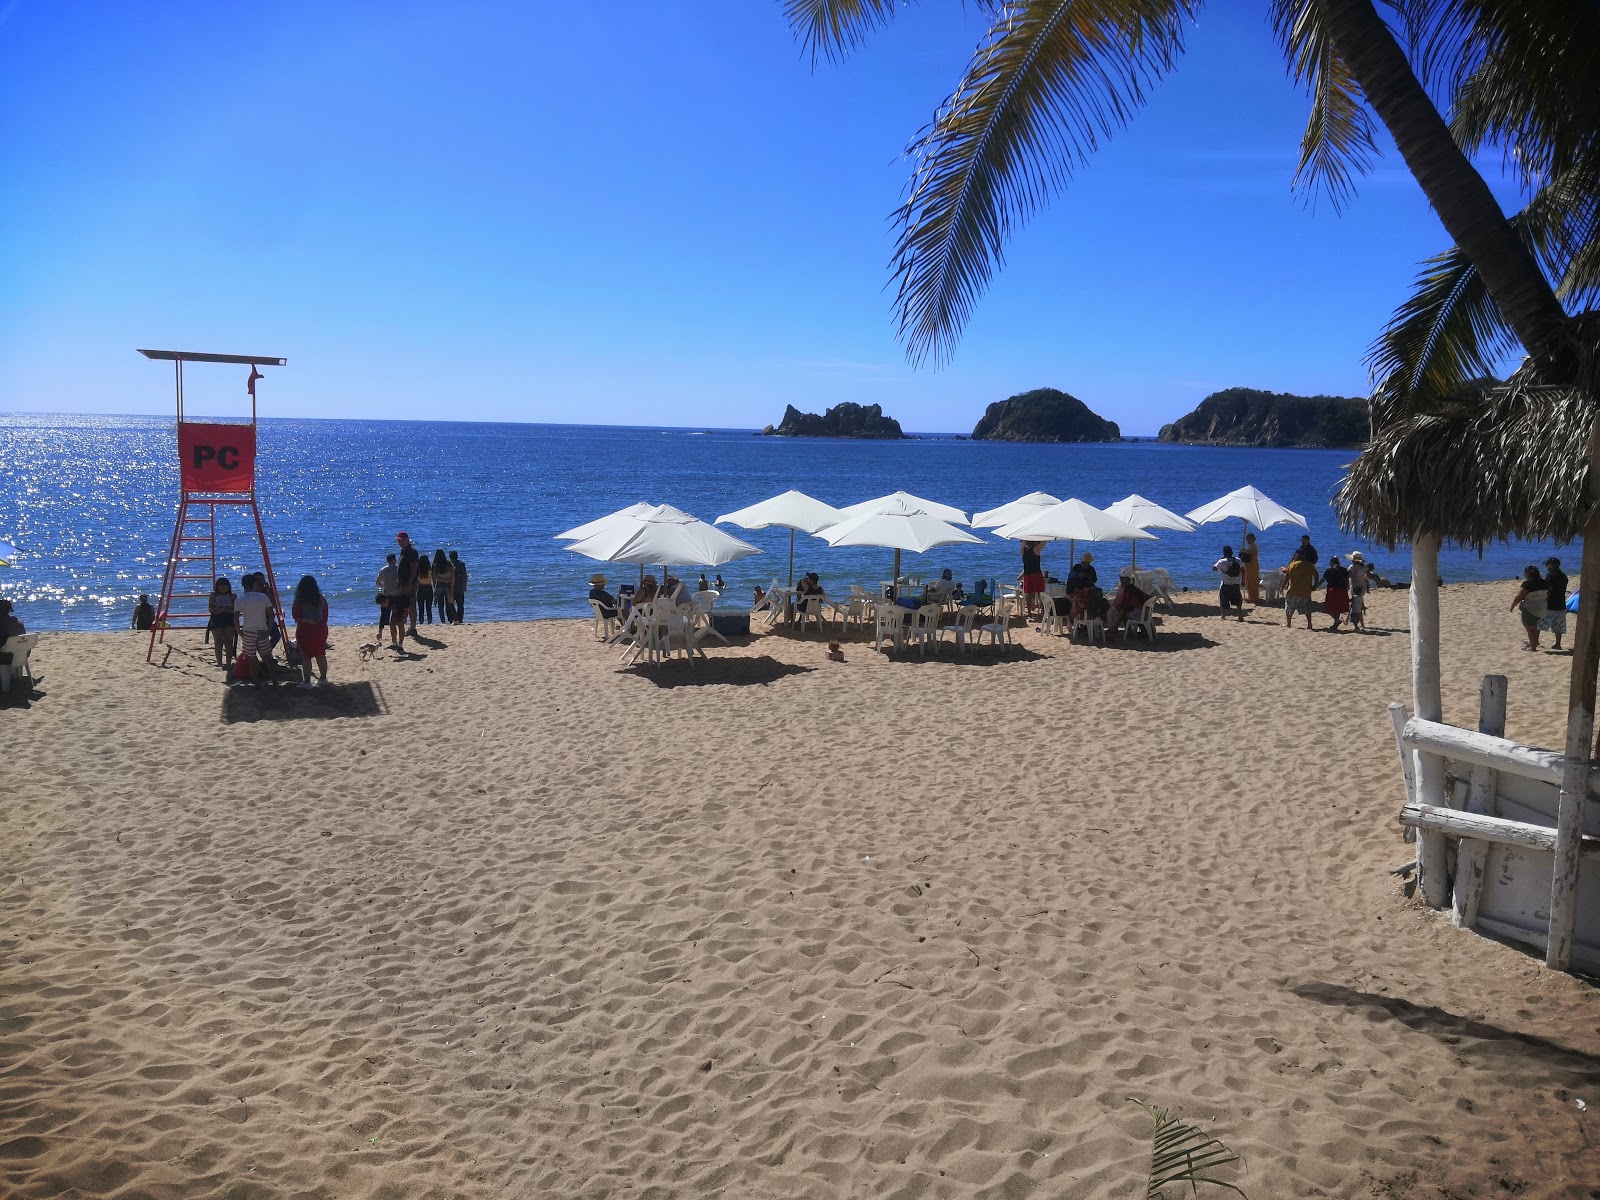 Fotografija Playa De Melaque priljubljeno mesto med poznavalci sprostitve